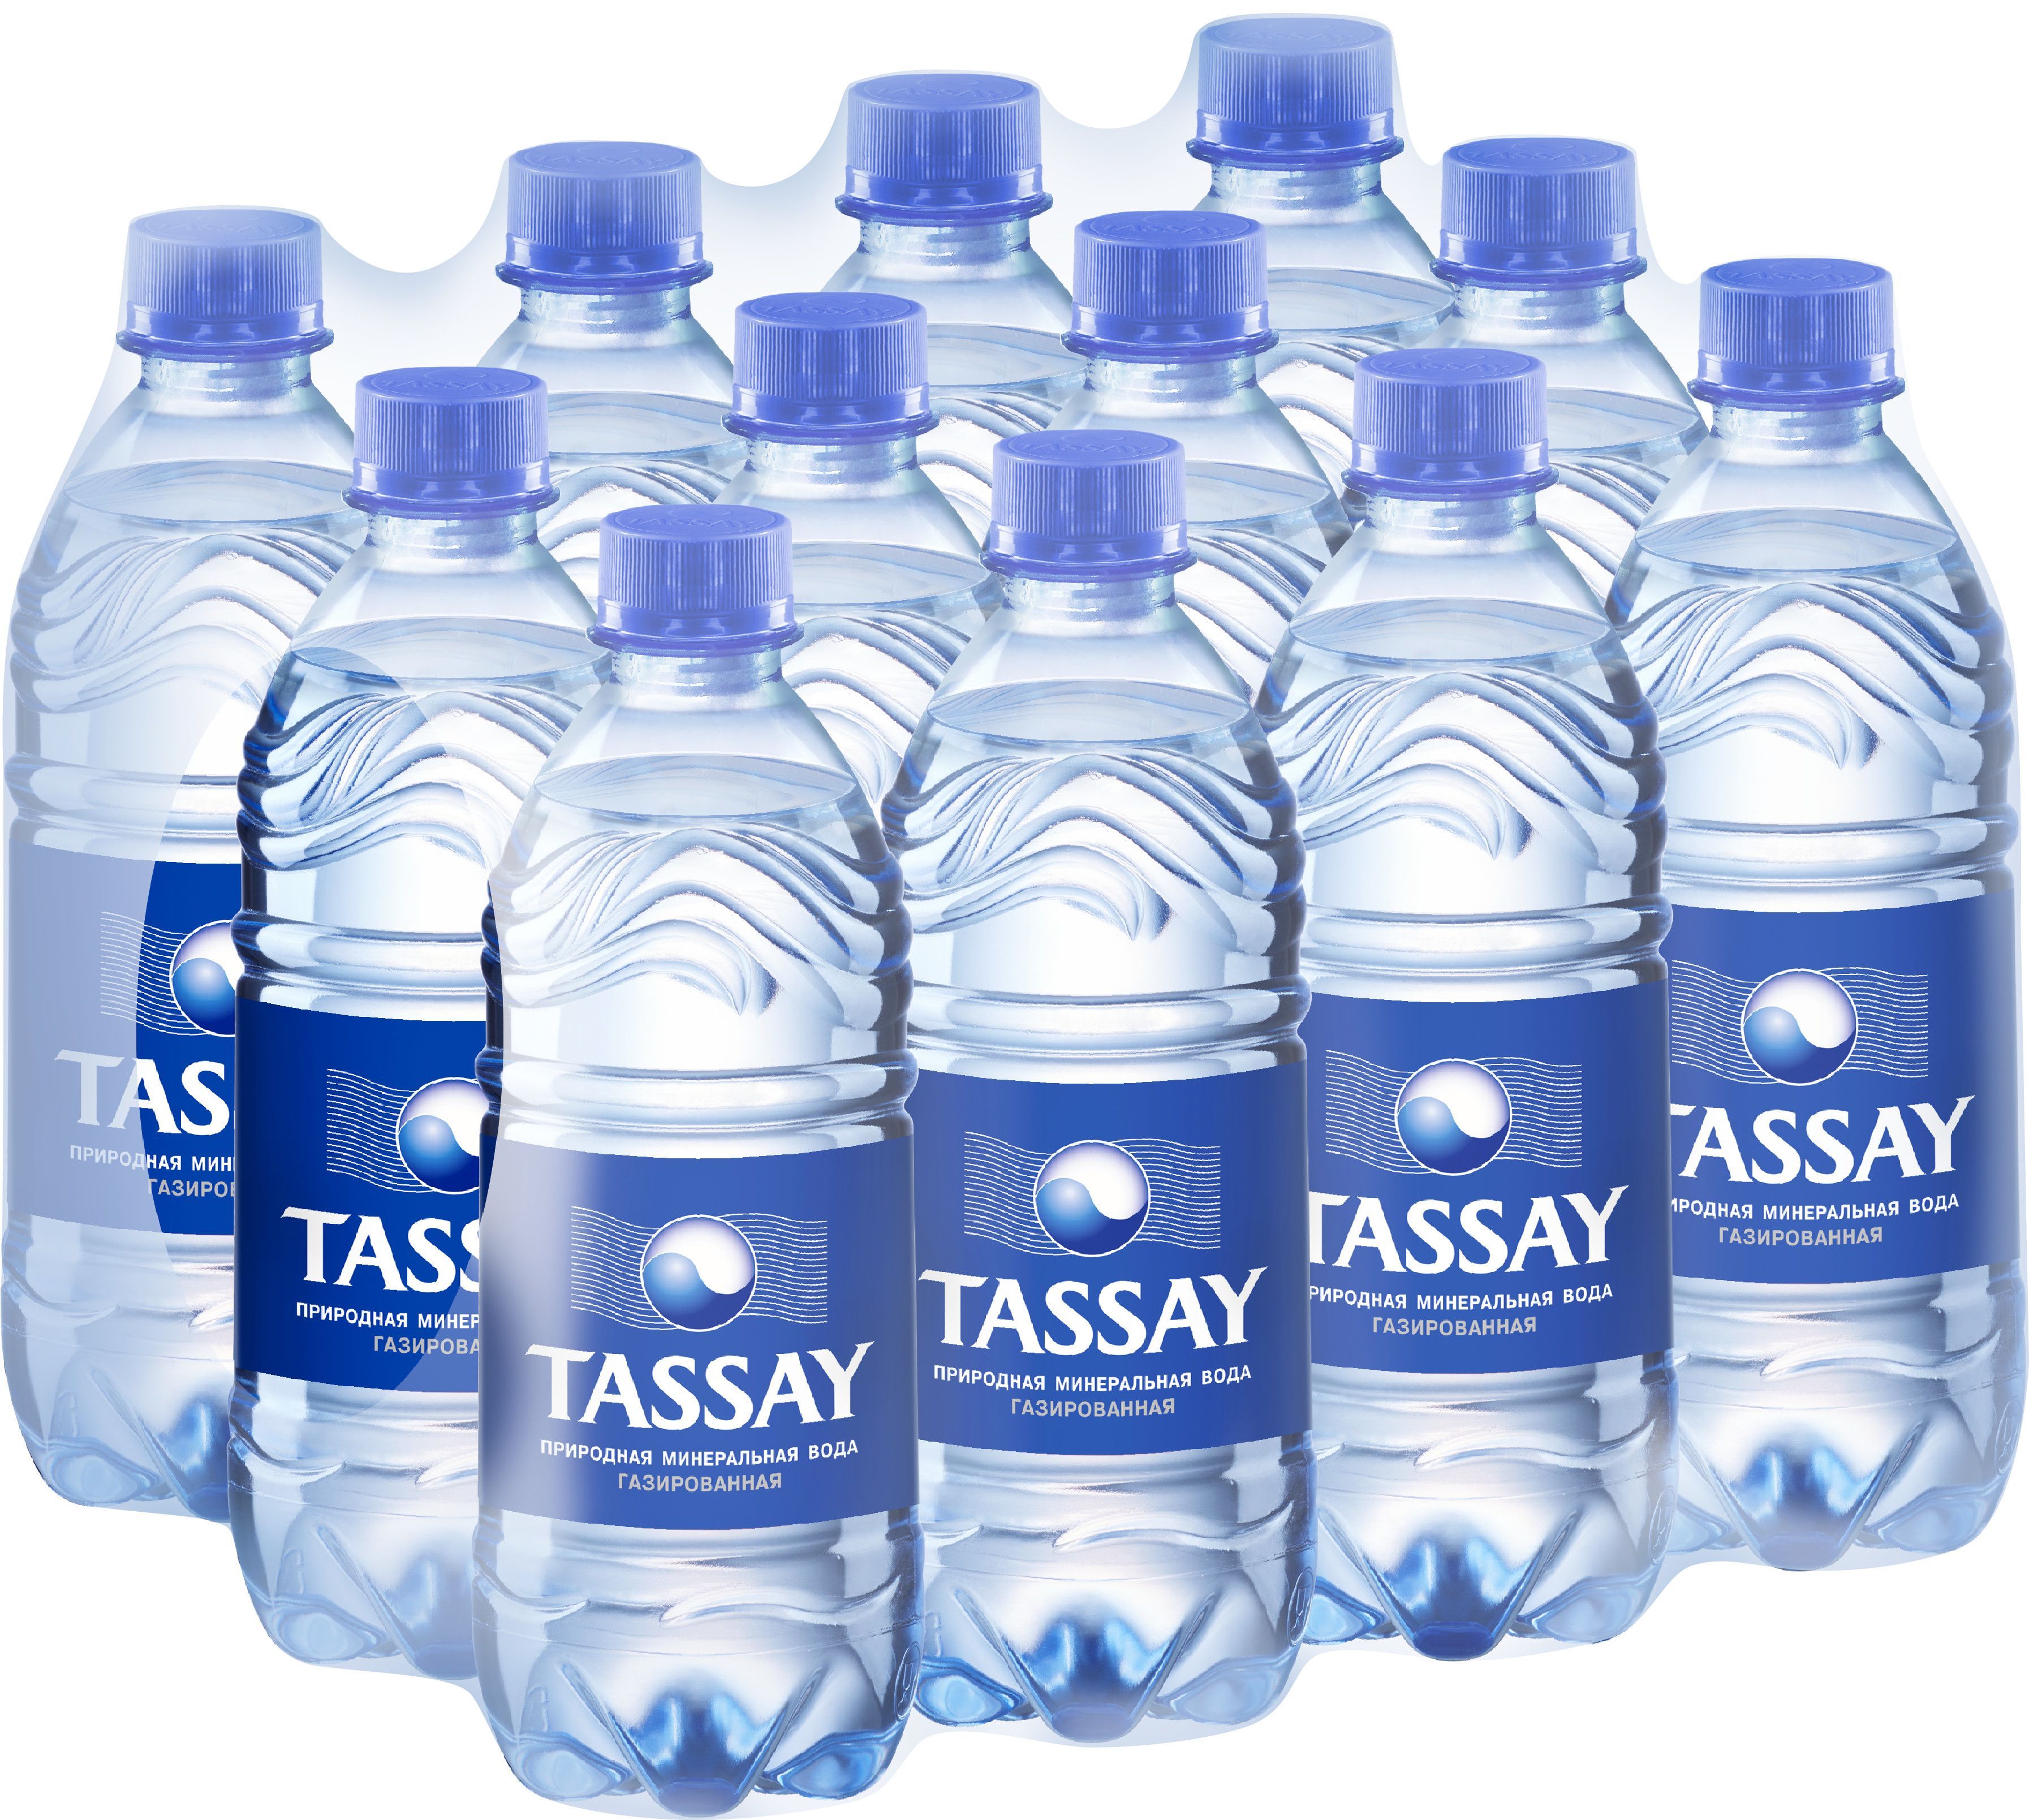 Минеральная вода Tassay. Tassay вода 0.5. Тассай вода ПЭТ 0.5. Вода Tassay 0.5л.